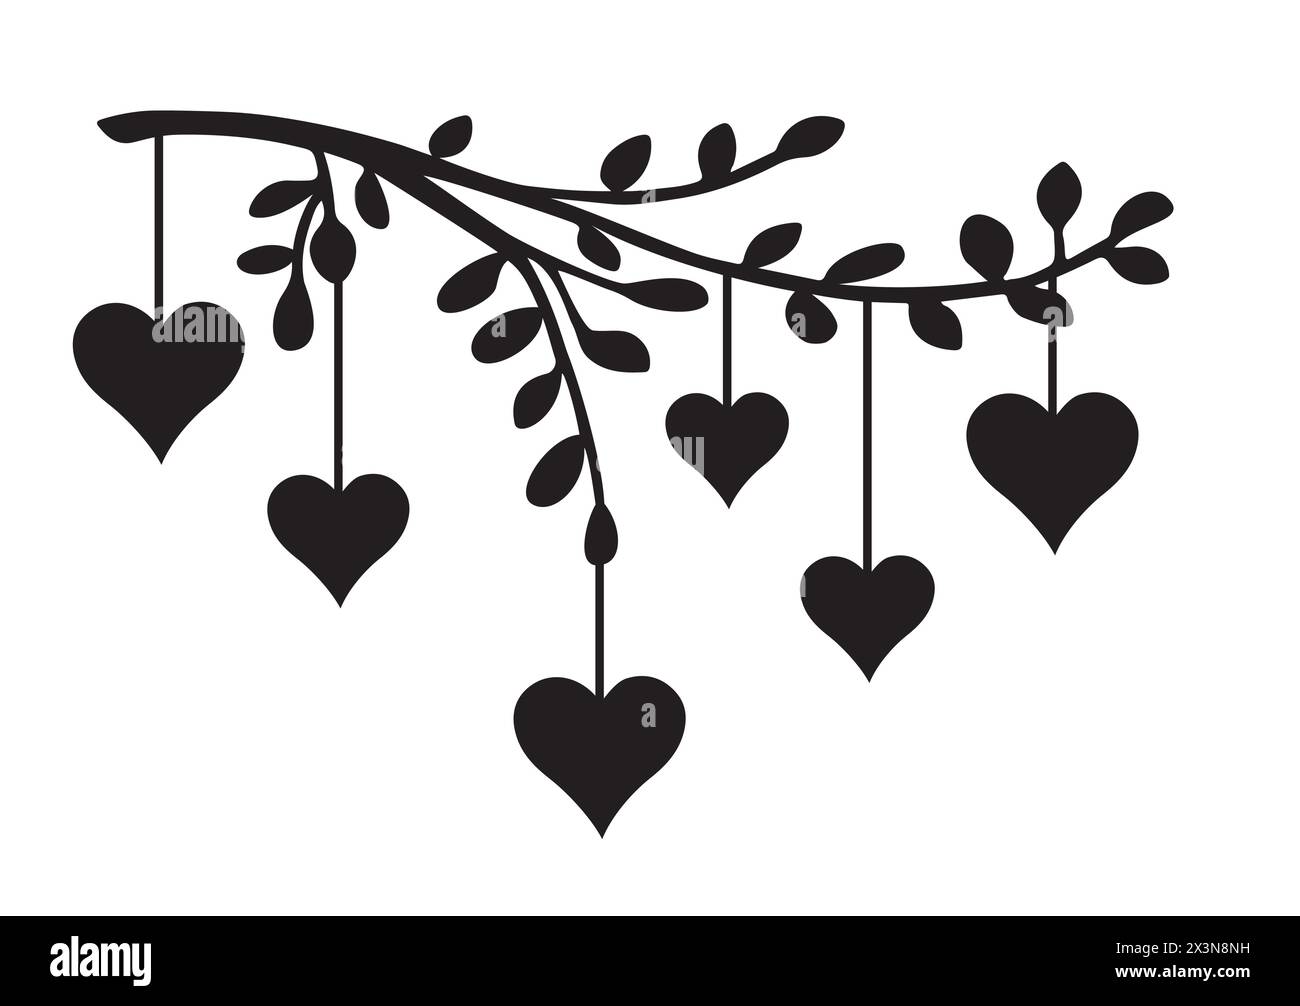 heart on tree Illustrator Stock Vector